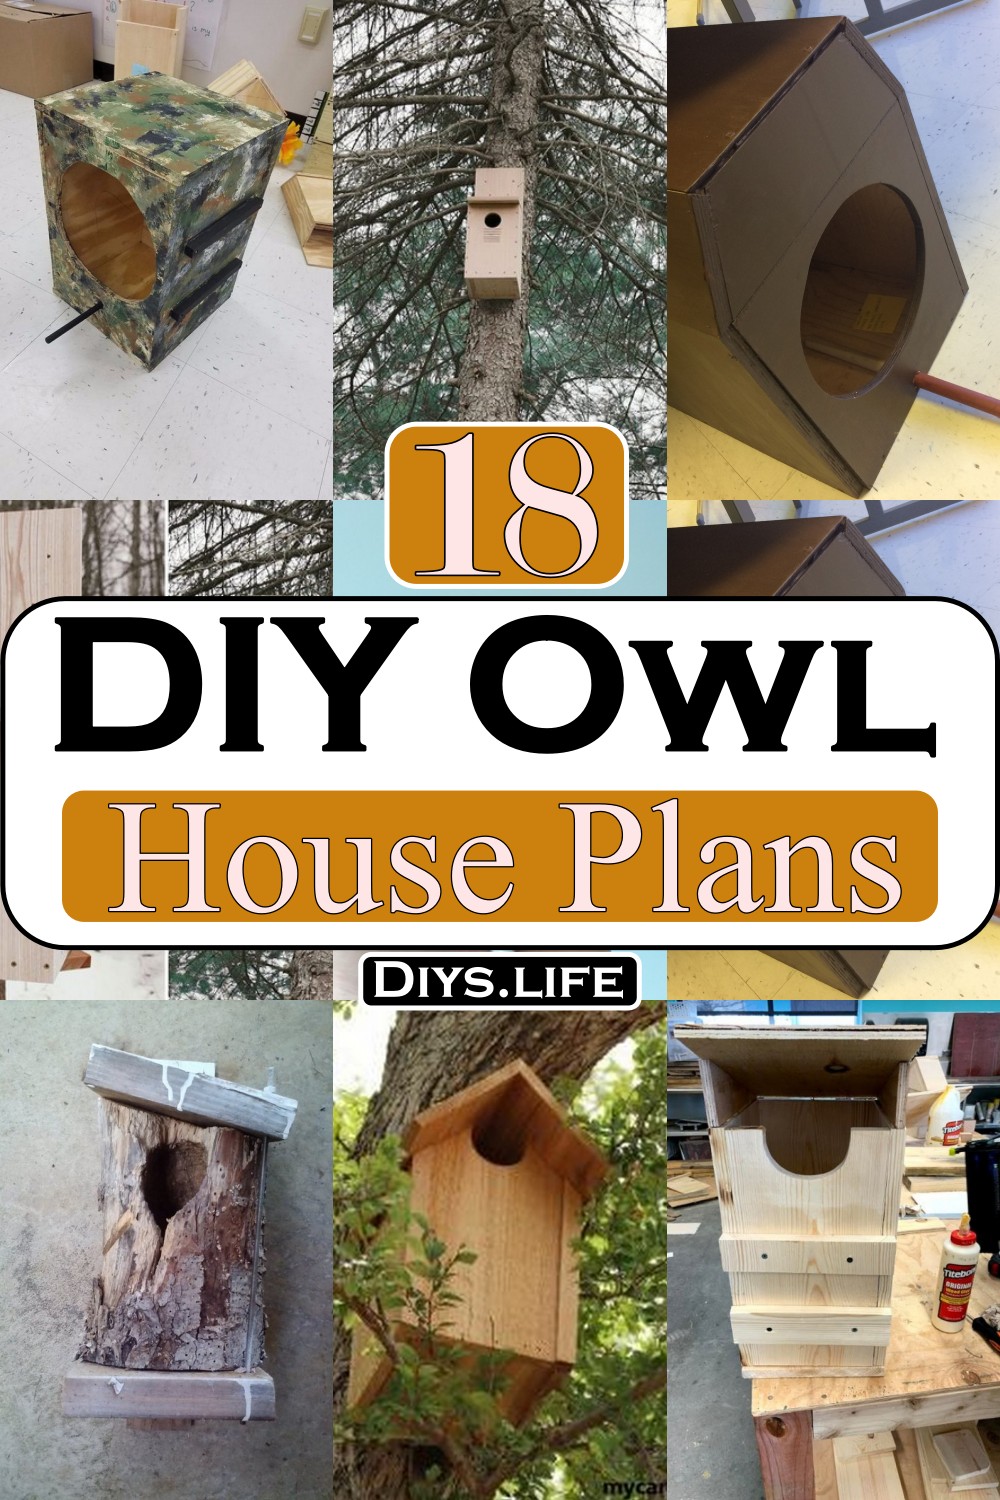 DIY Owl House Plans